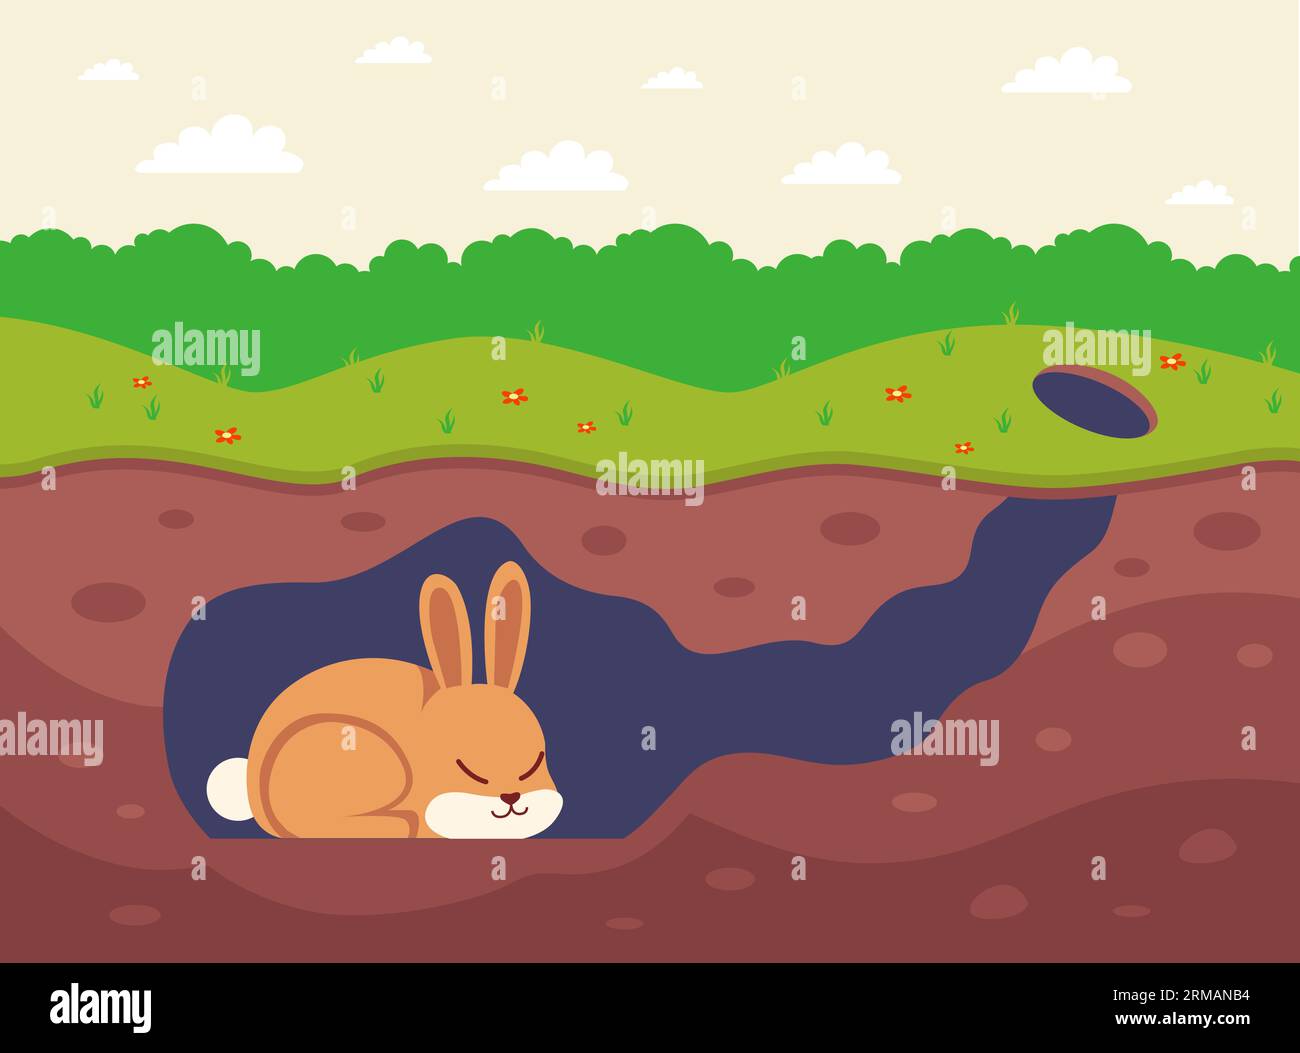 Ein schlafendes Kaninchen schläft in einem Loch. Flache Vektorillustration. Stock Vektor